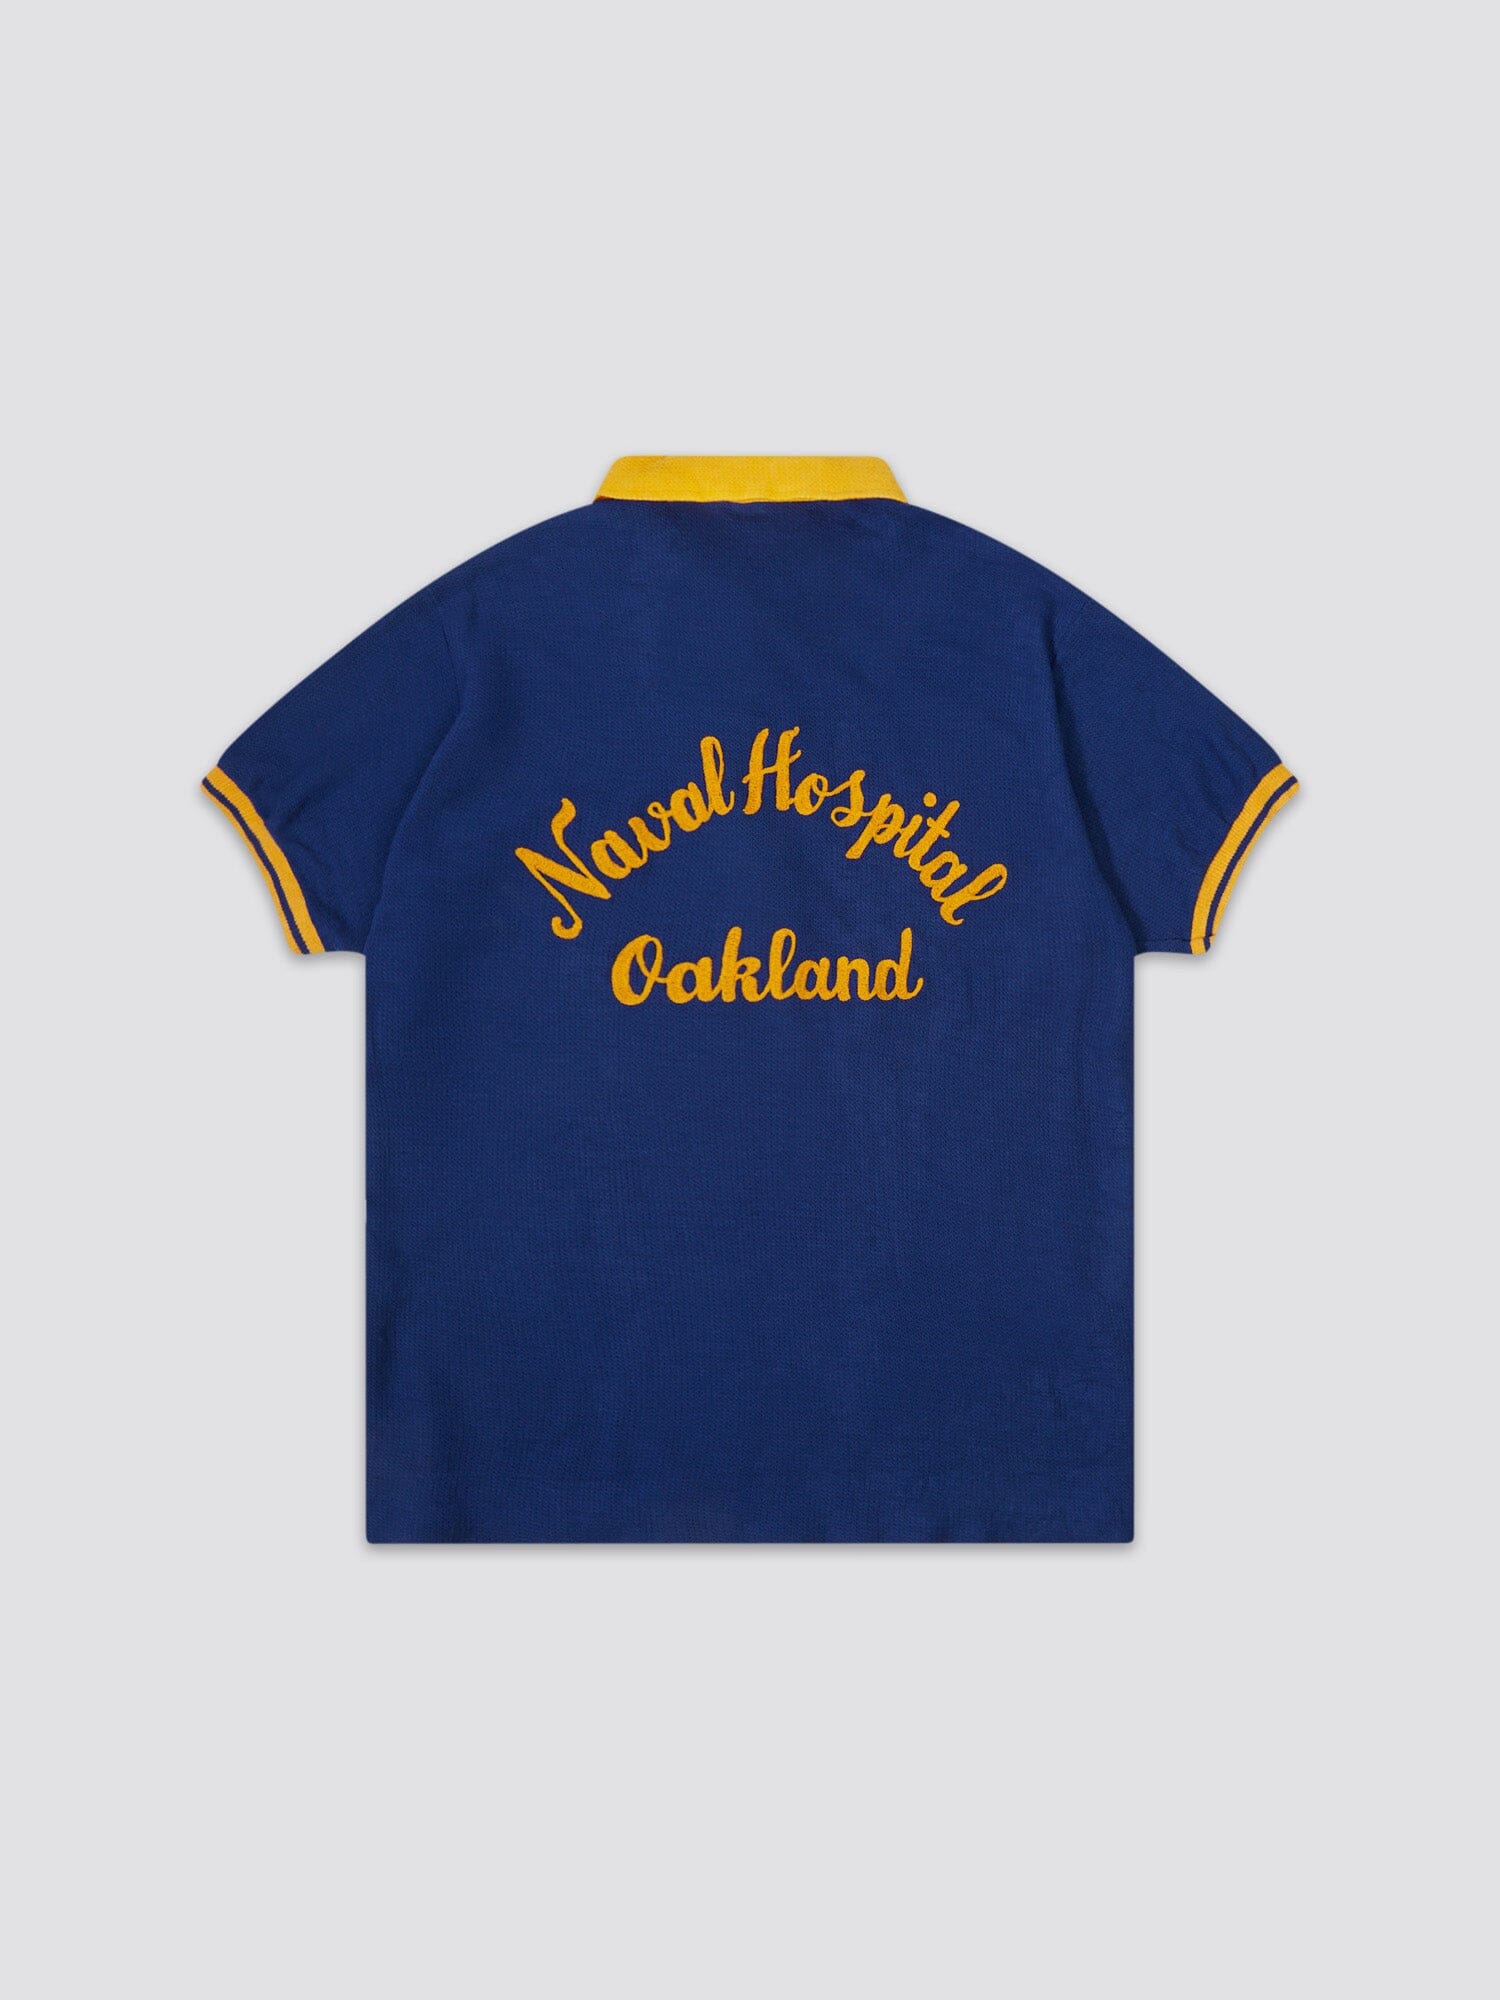 Oakland Athletics retro Bowling Shirt 